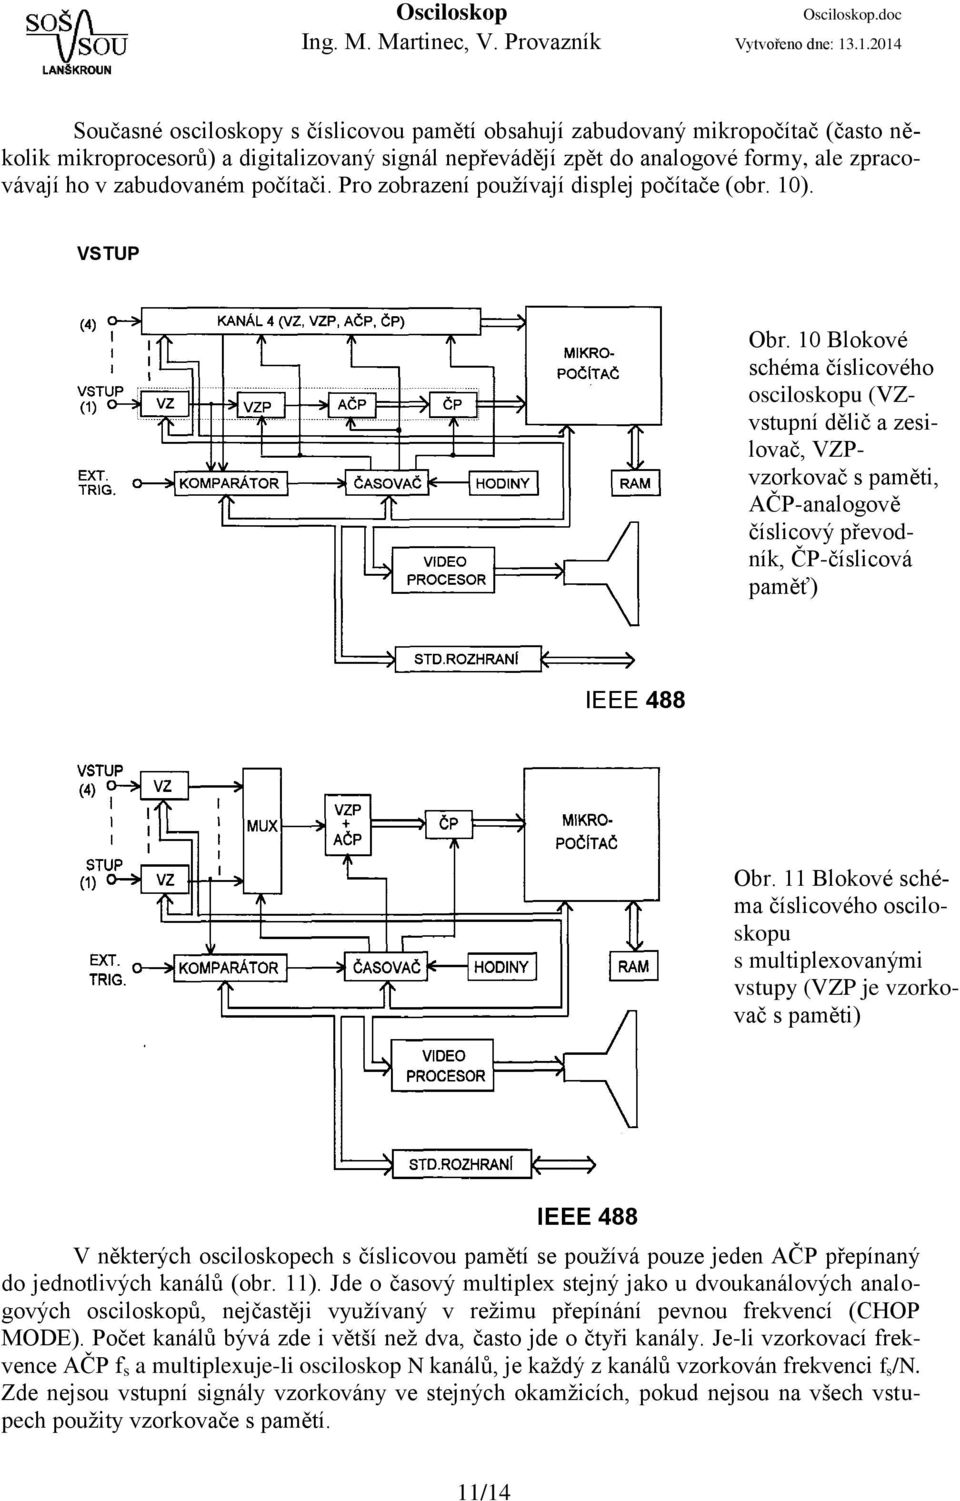 10 Blokové schéma číslicového osciloskopu (VZvstupní dělič a zesilovač, VZPvzorkovač s paměti, AČP-analogově číslicový převodník, ČP-číslicová paměť) IEEE 488 Obr.